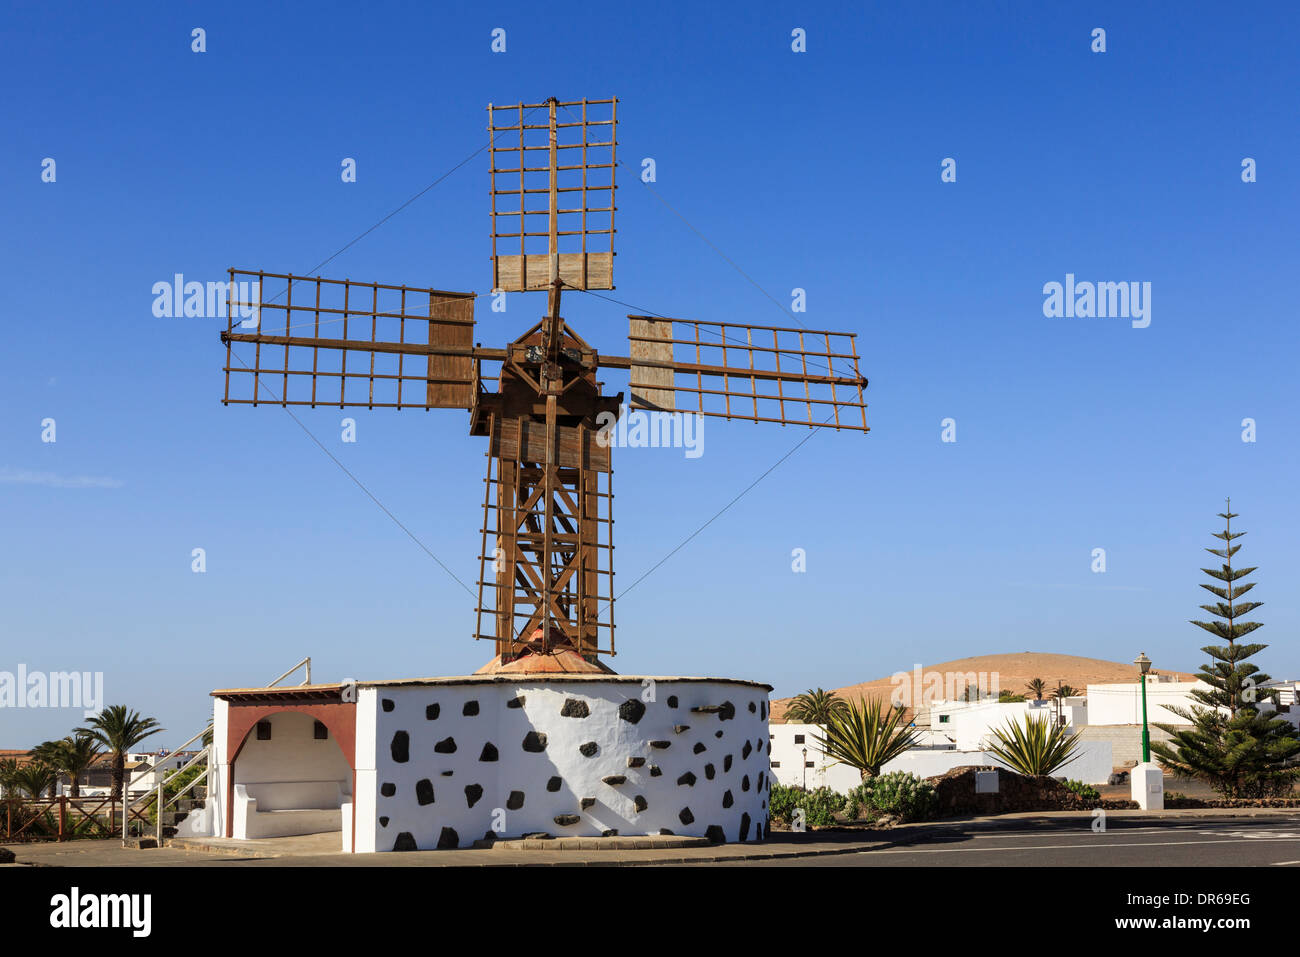 Molino de viento de madera tradicional en el casco antiguo de Teguise, Lanzarote, Islas Canarias, España, Europa. Foto de stock